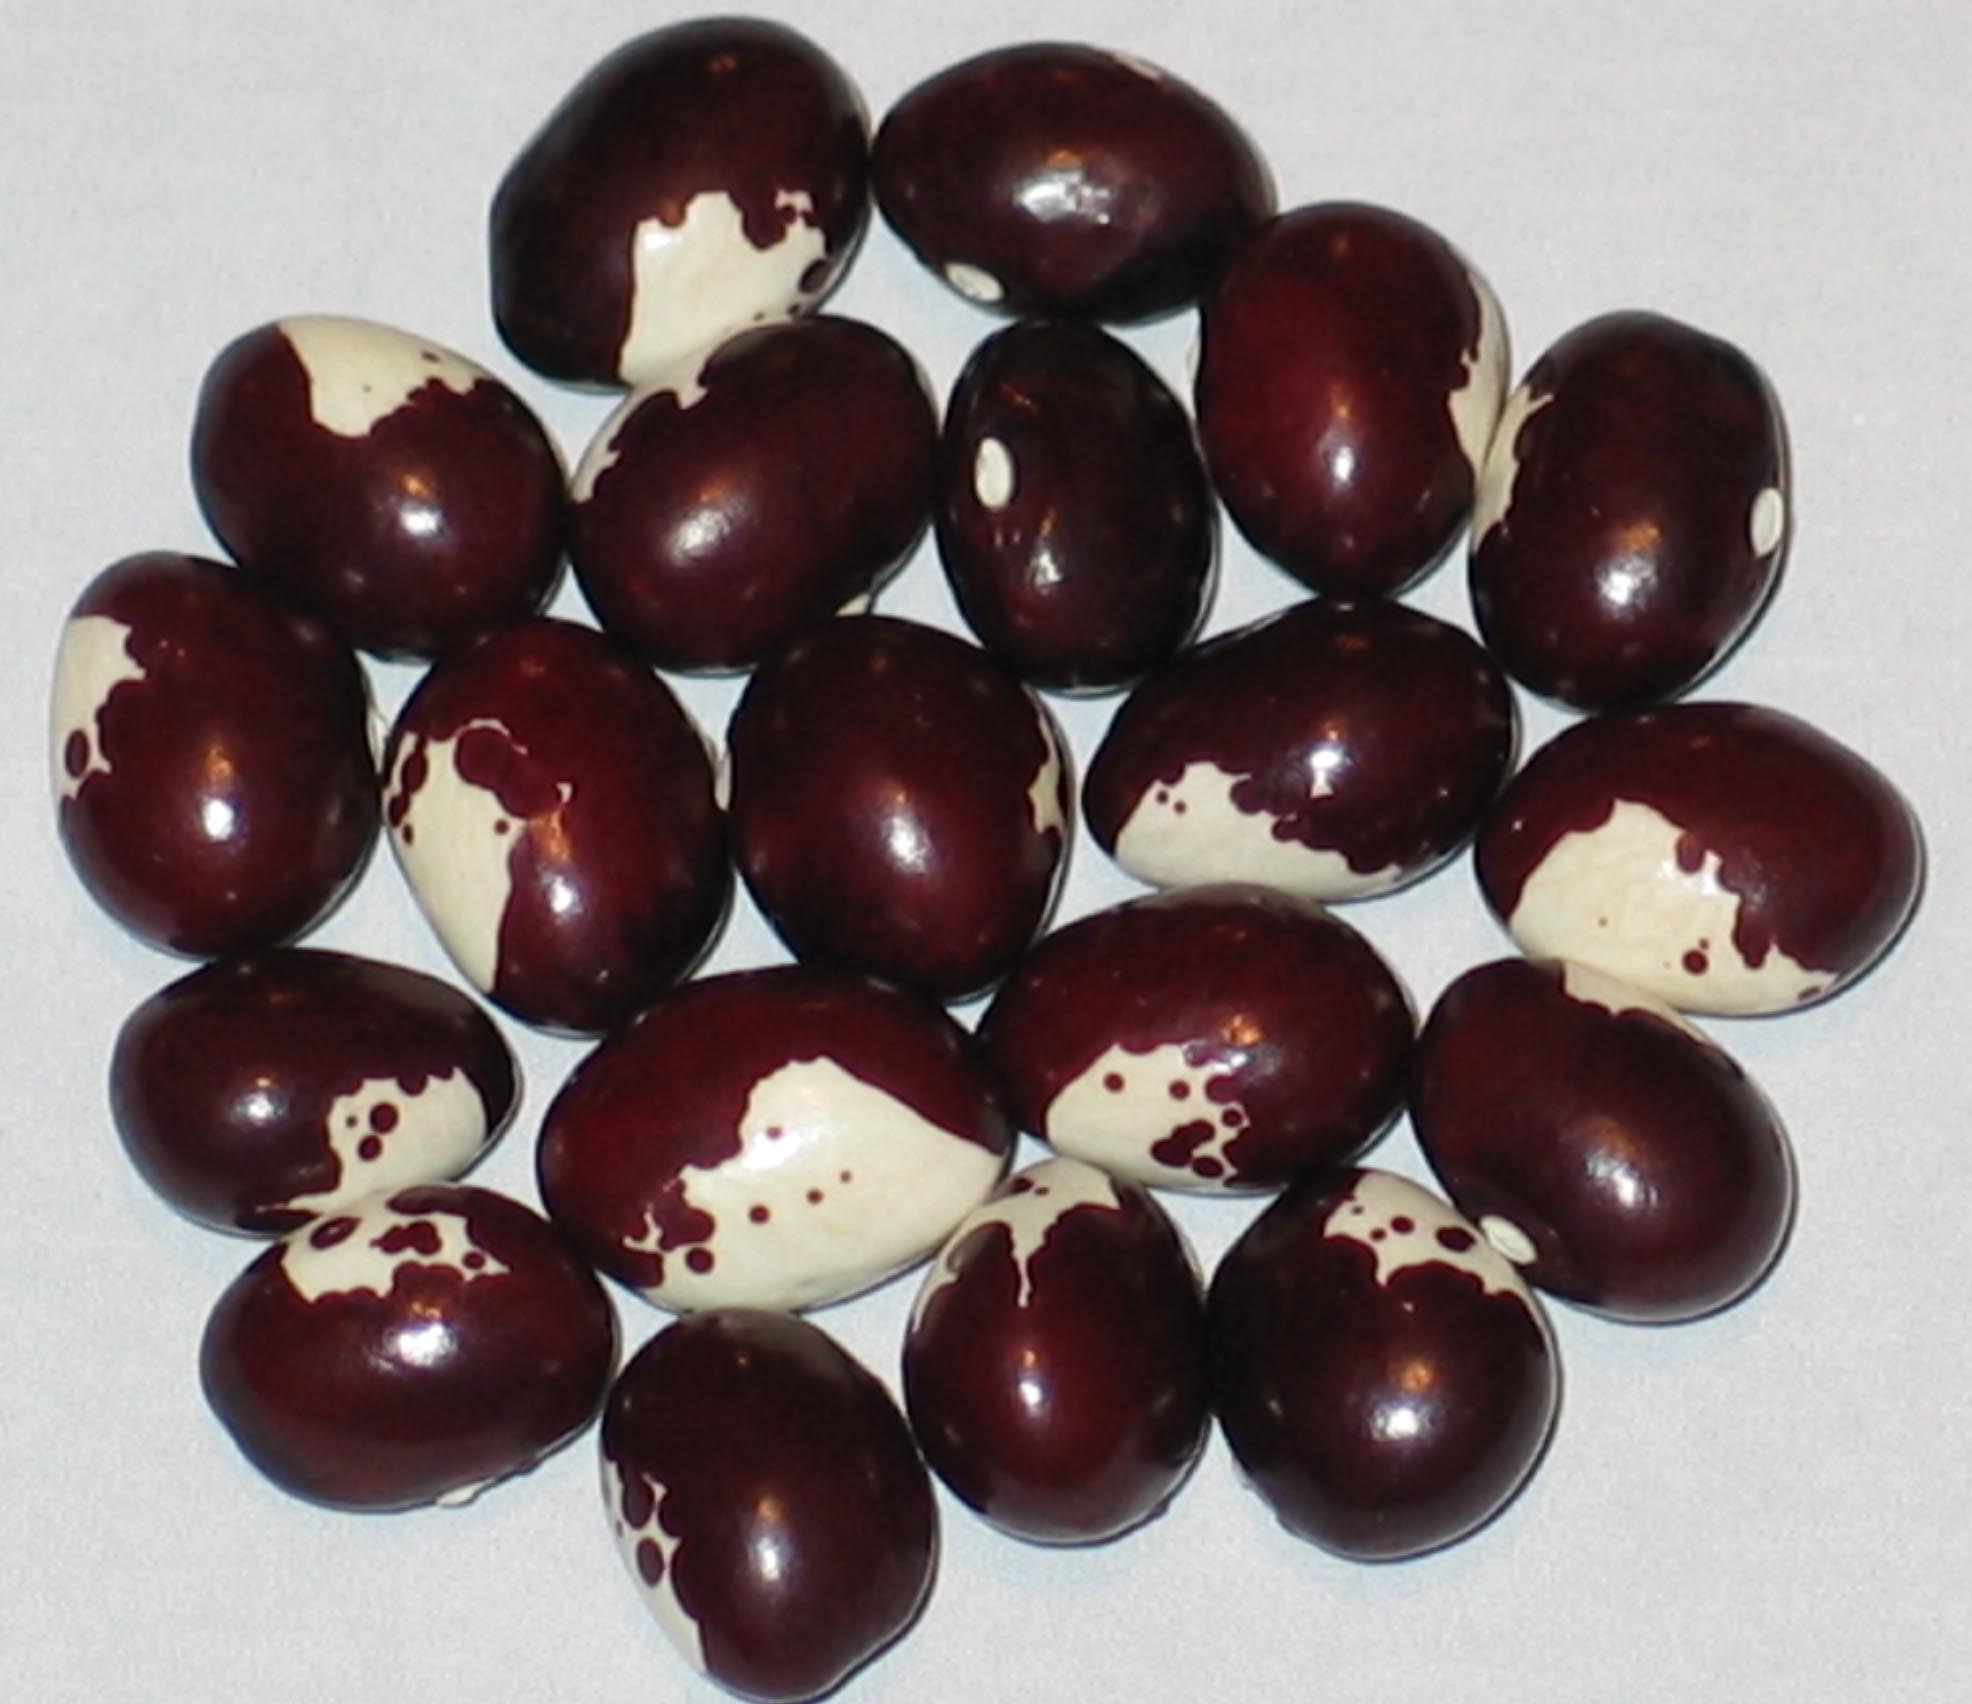 image of Munachedda Rossa beans